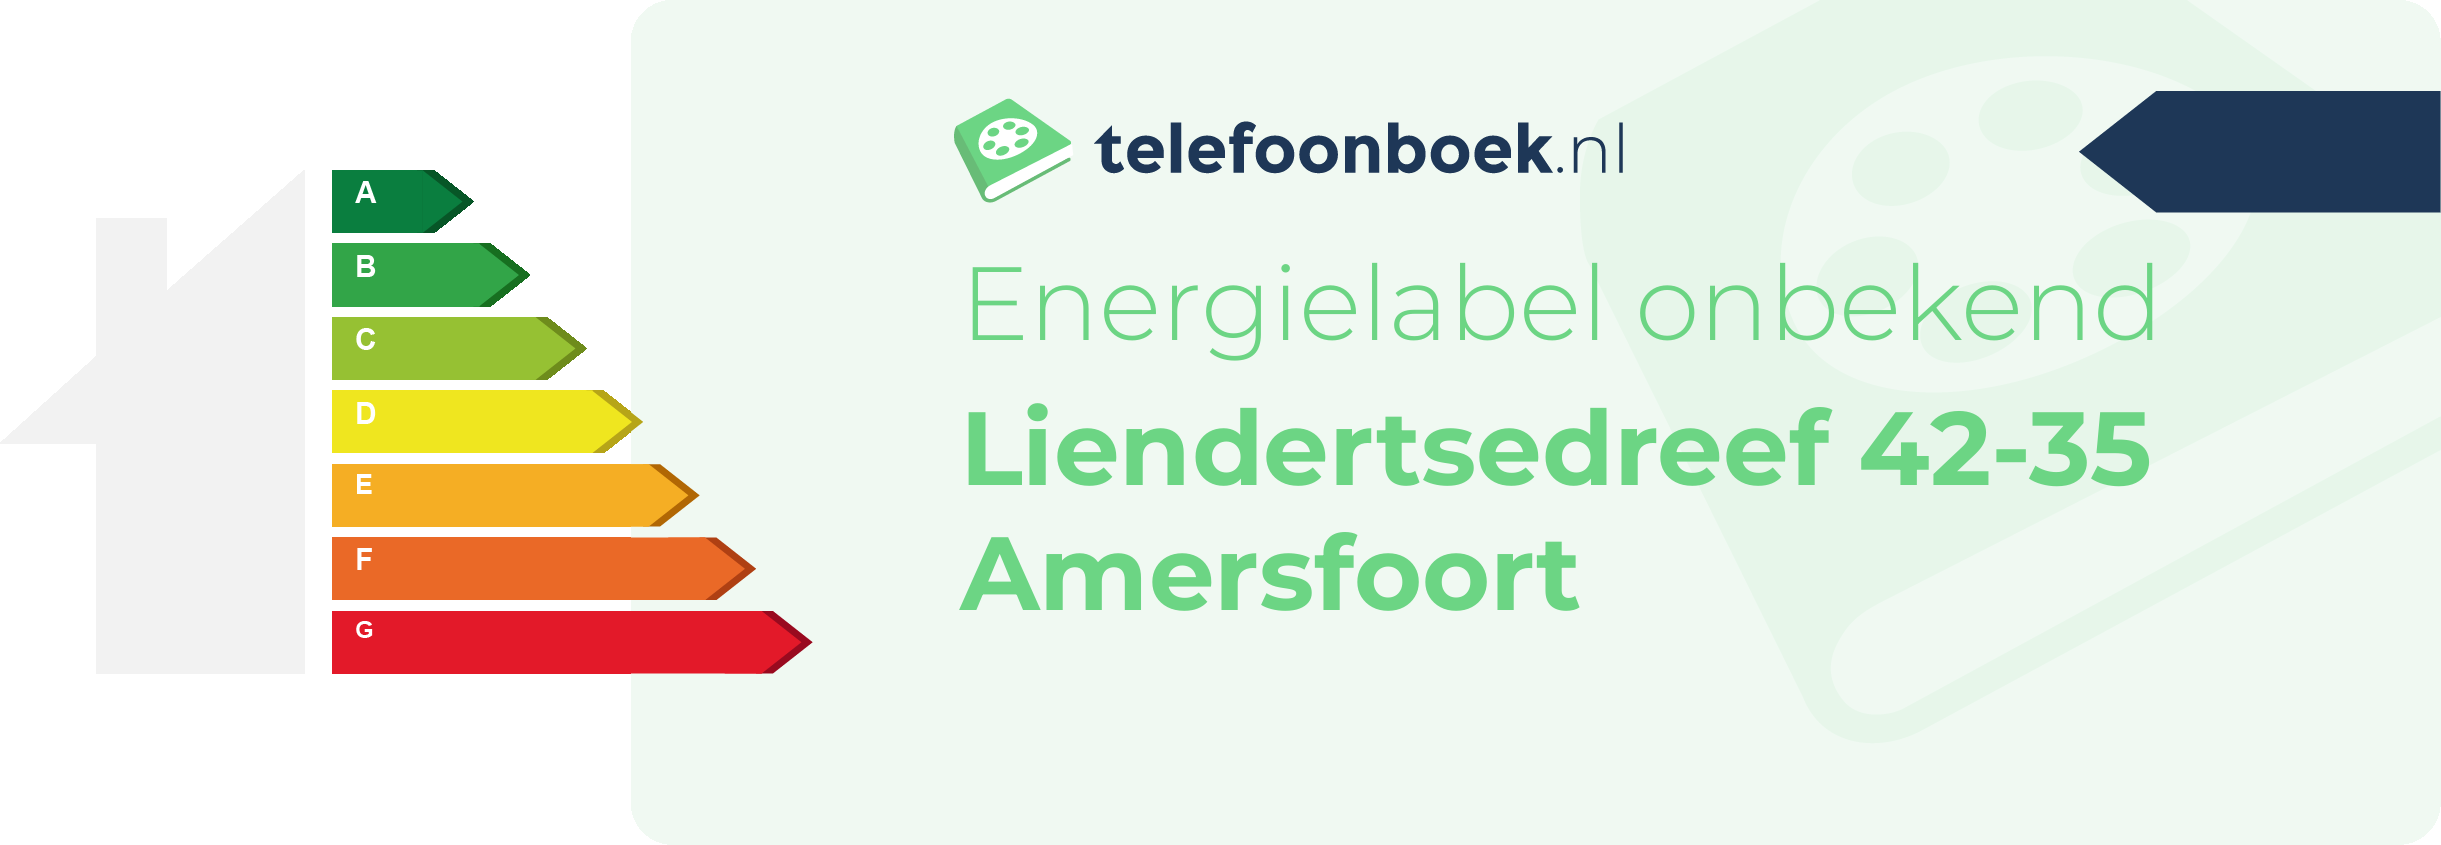 Energielabel Liendertsedreef 42-35 Amersfoort